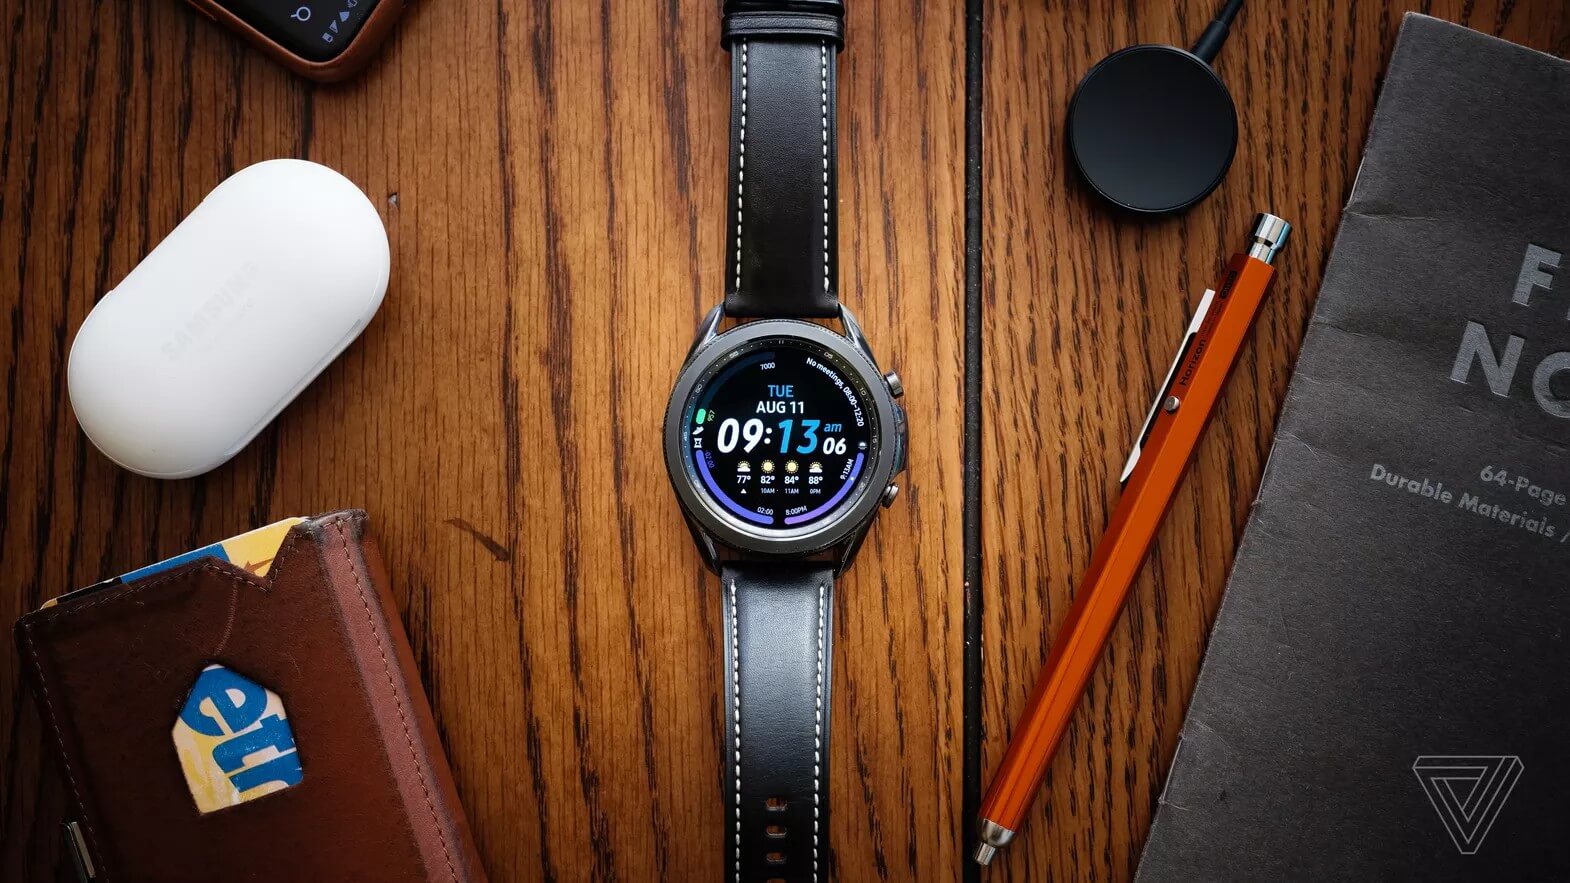 Đánh giá Samsung Galaxy Watch 3: Được đánh giá cao về tính năng và thiết kế, Samsung Galaxy Watch 3 chắc chắn sẽ không làm bạn thất vọng. Hãy xem đánh giá chi tiết để cảm nhận sự tuyệt vời của sản phẩm này.